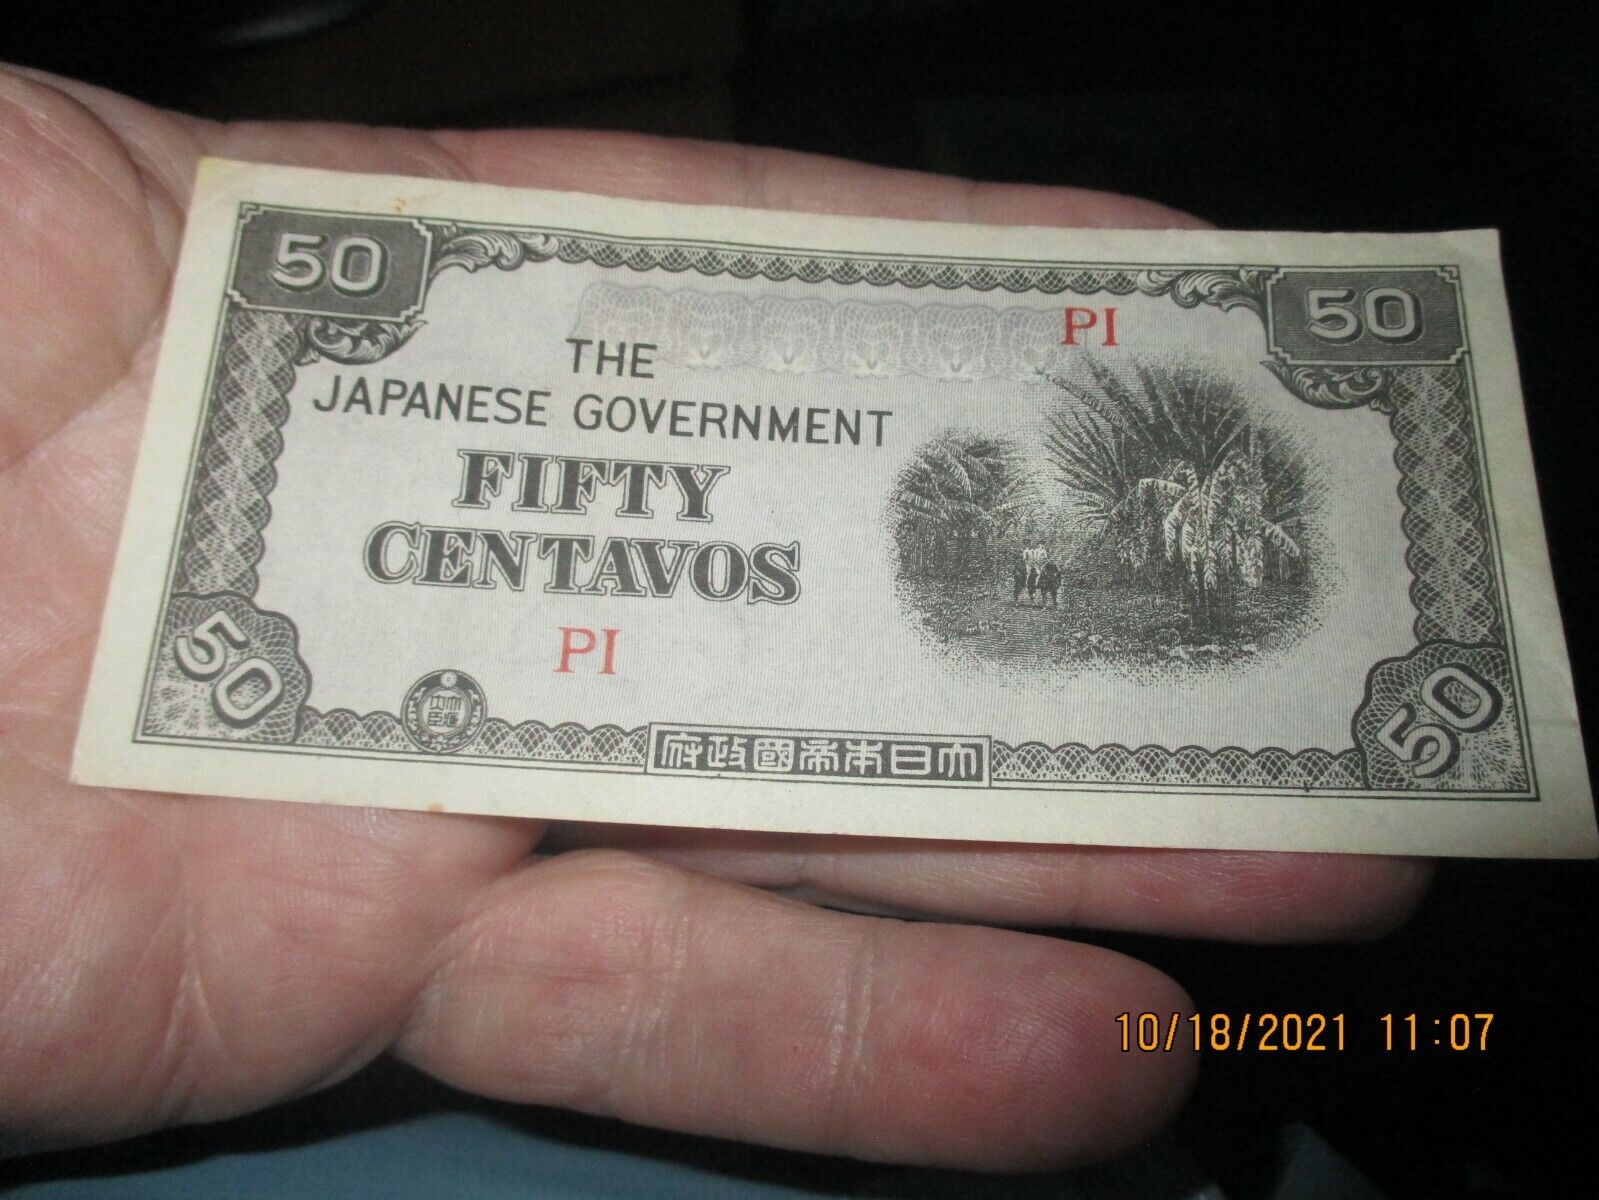 The Japanese Government Fifty Centavos PI Non-Cir